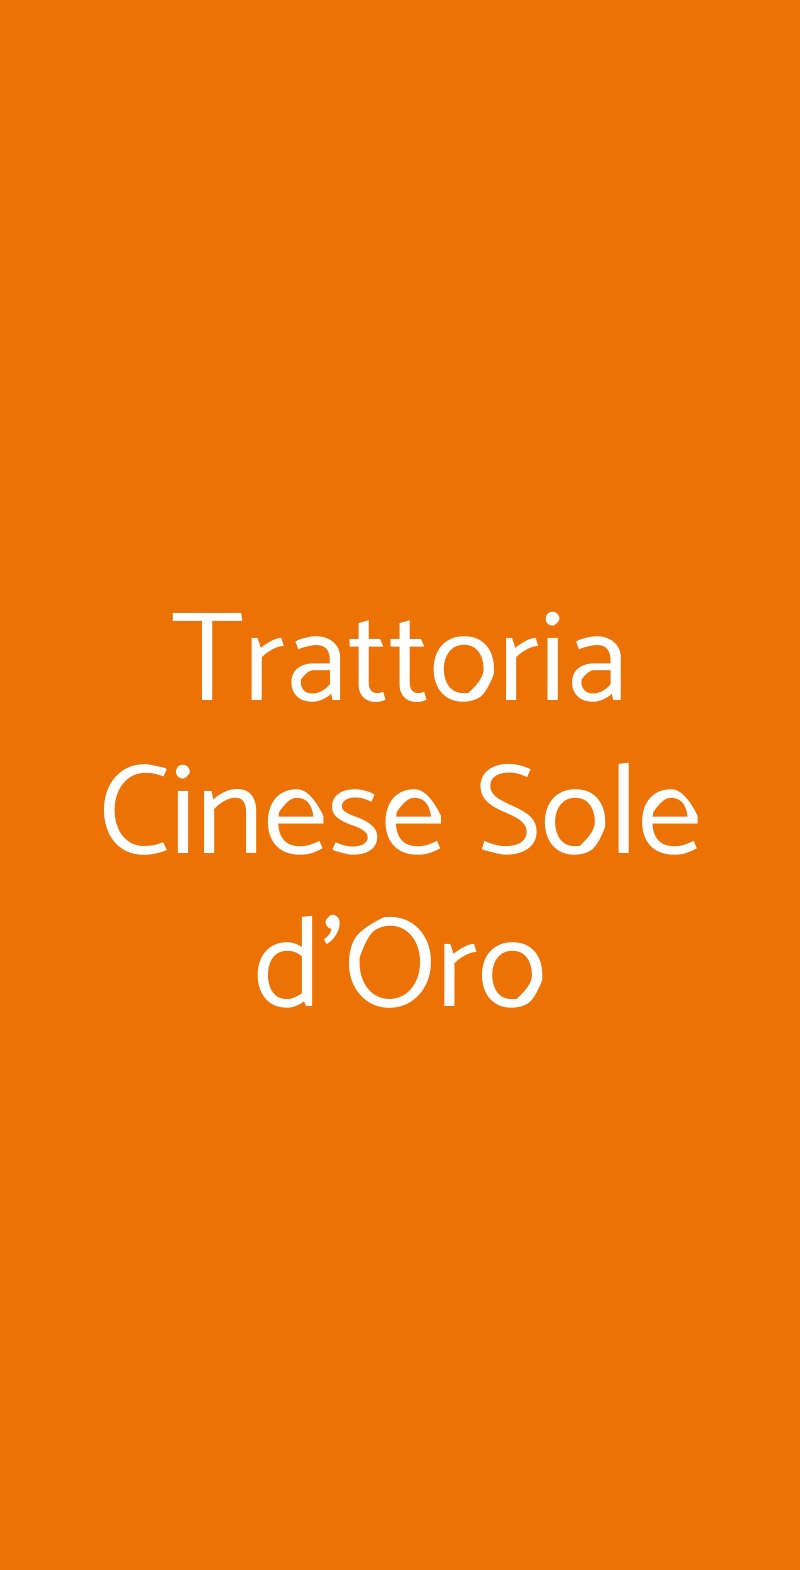 Trattoria Cinese Sole d'Oro Milano menù 1 pagina